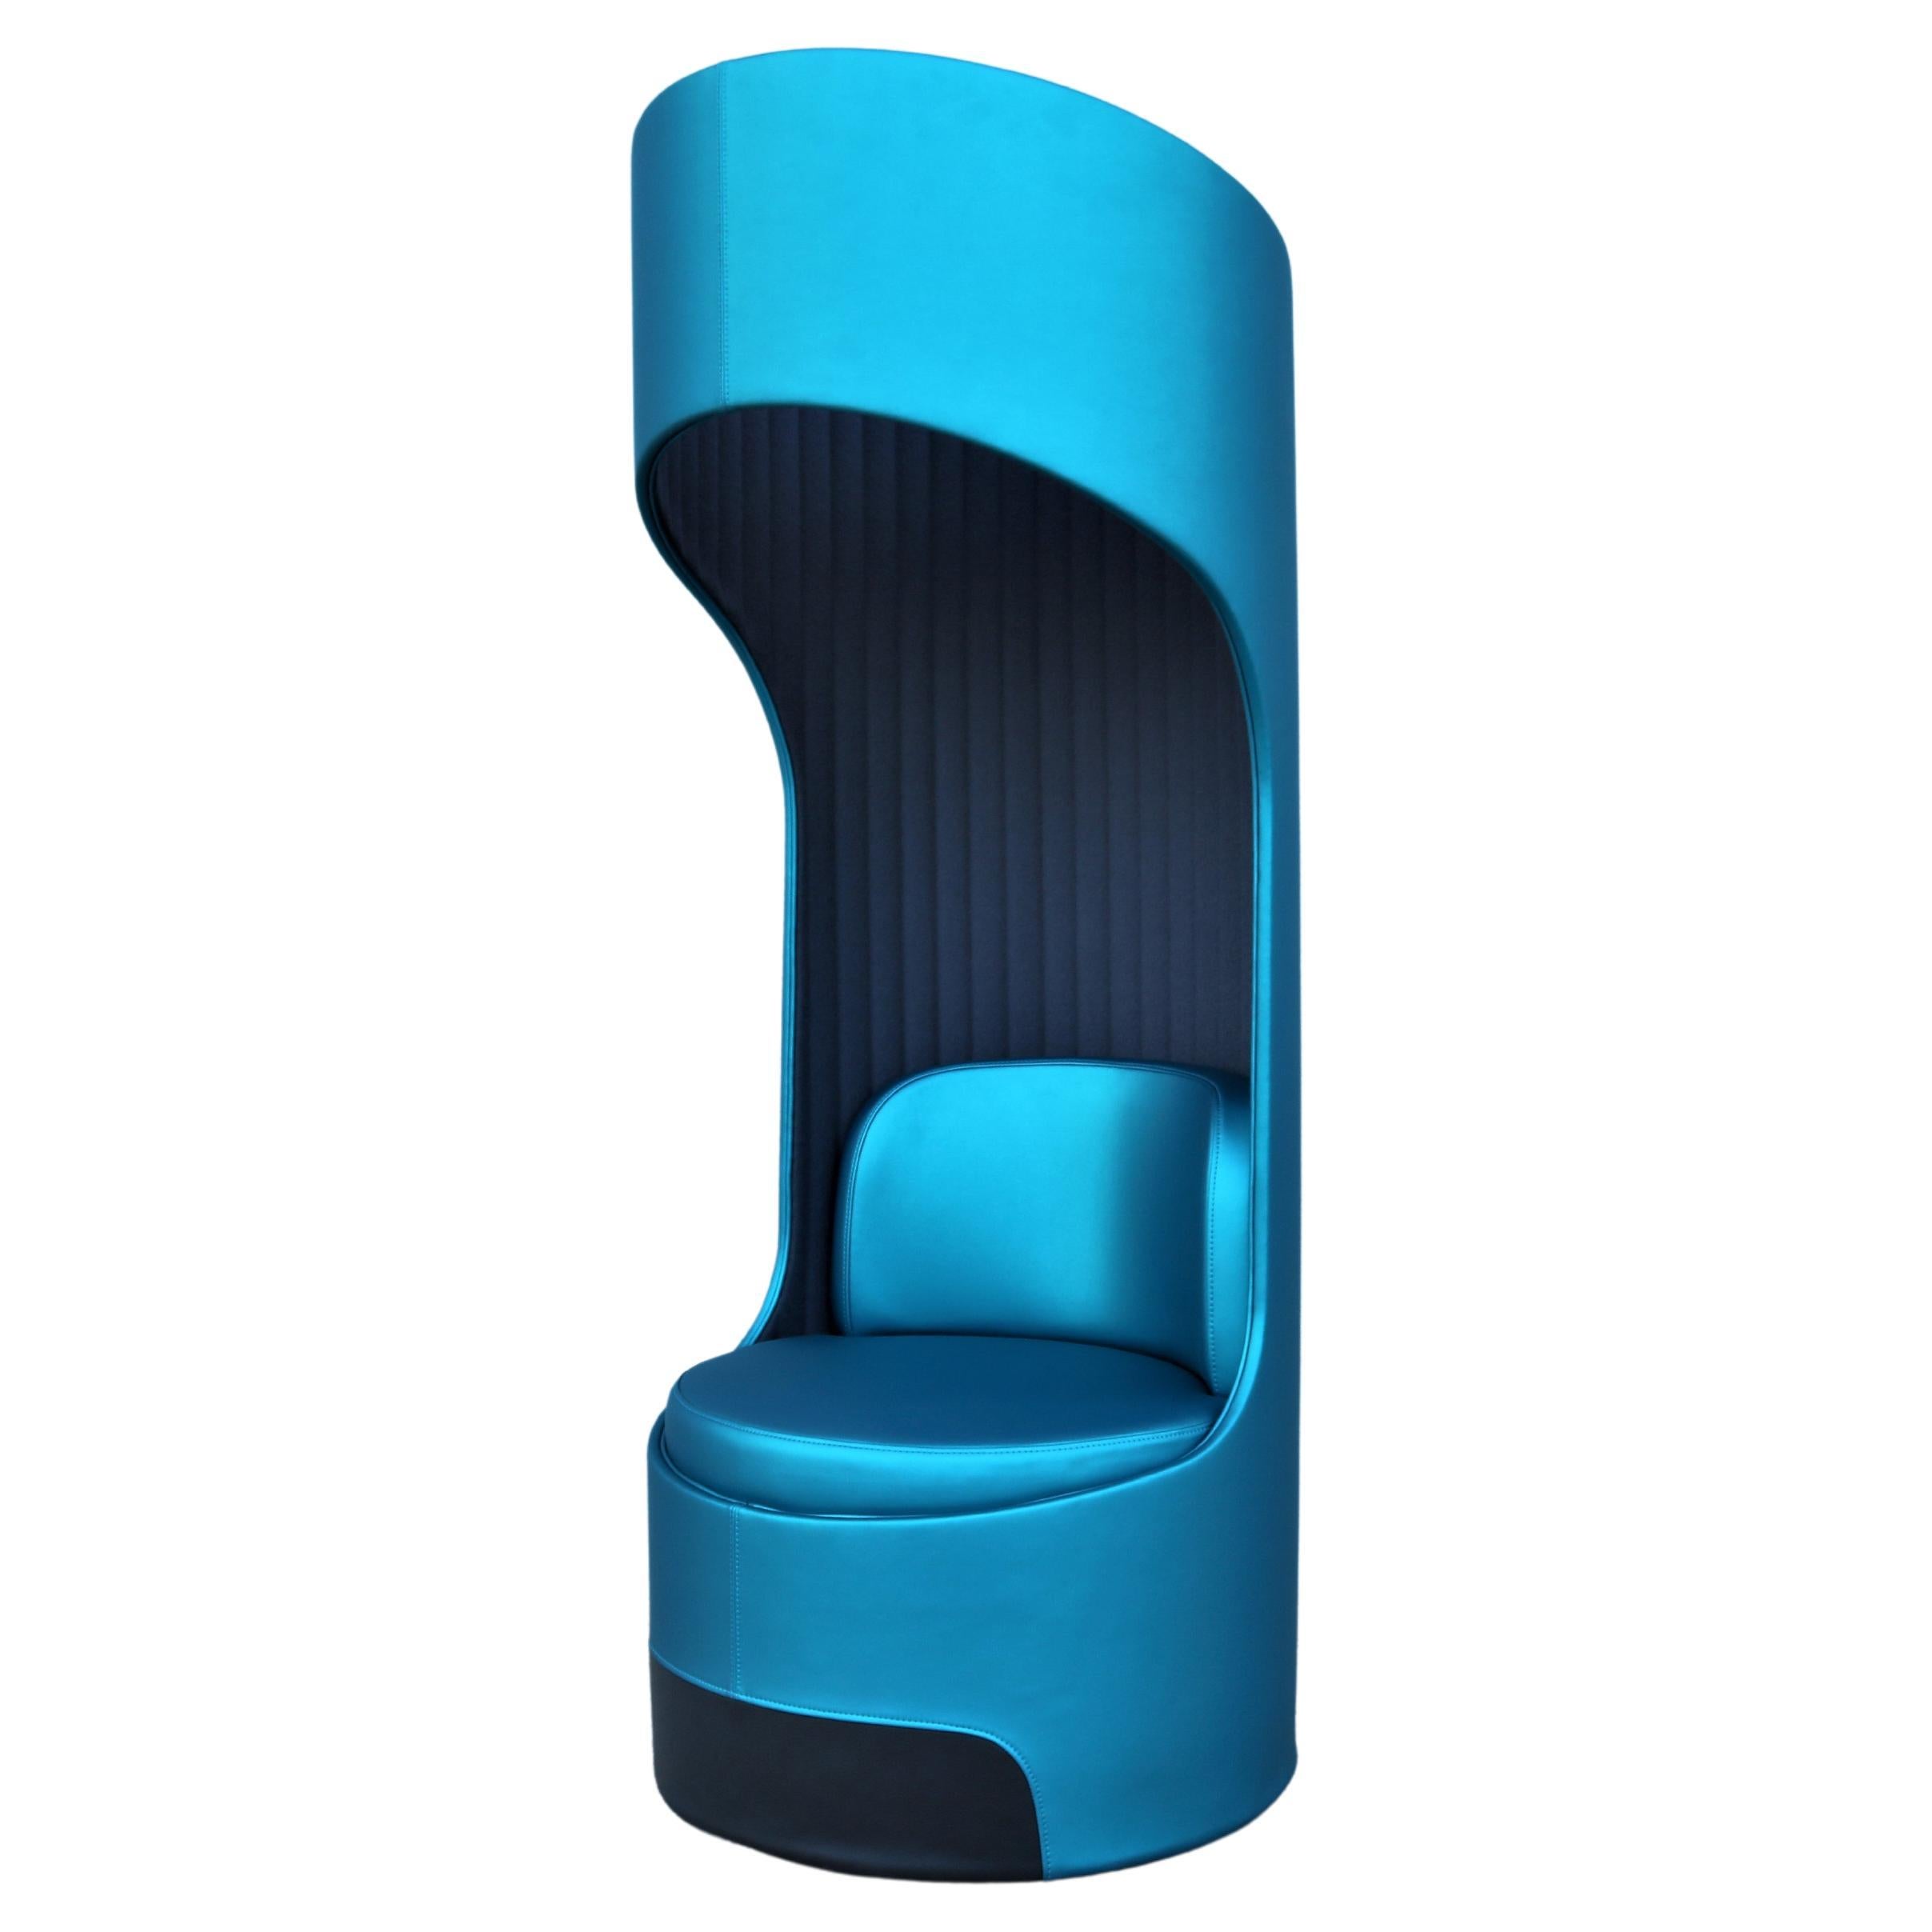 Moderner drehbarer Cega-Loungesessel mit hoher Rückenlehne von Boss Design, hergestellt im Vereinigten Königreich